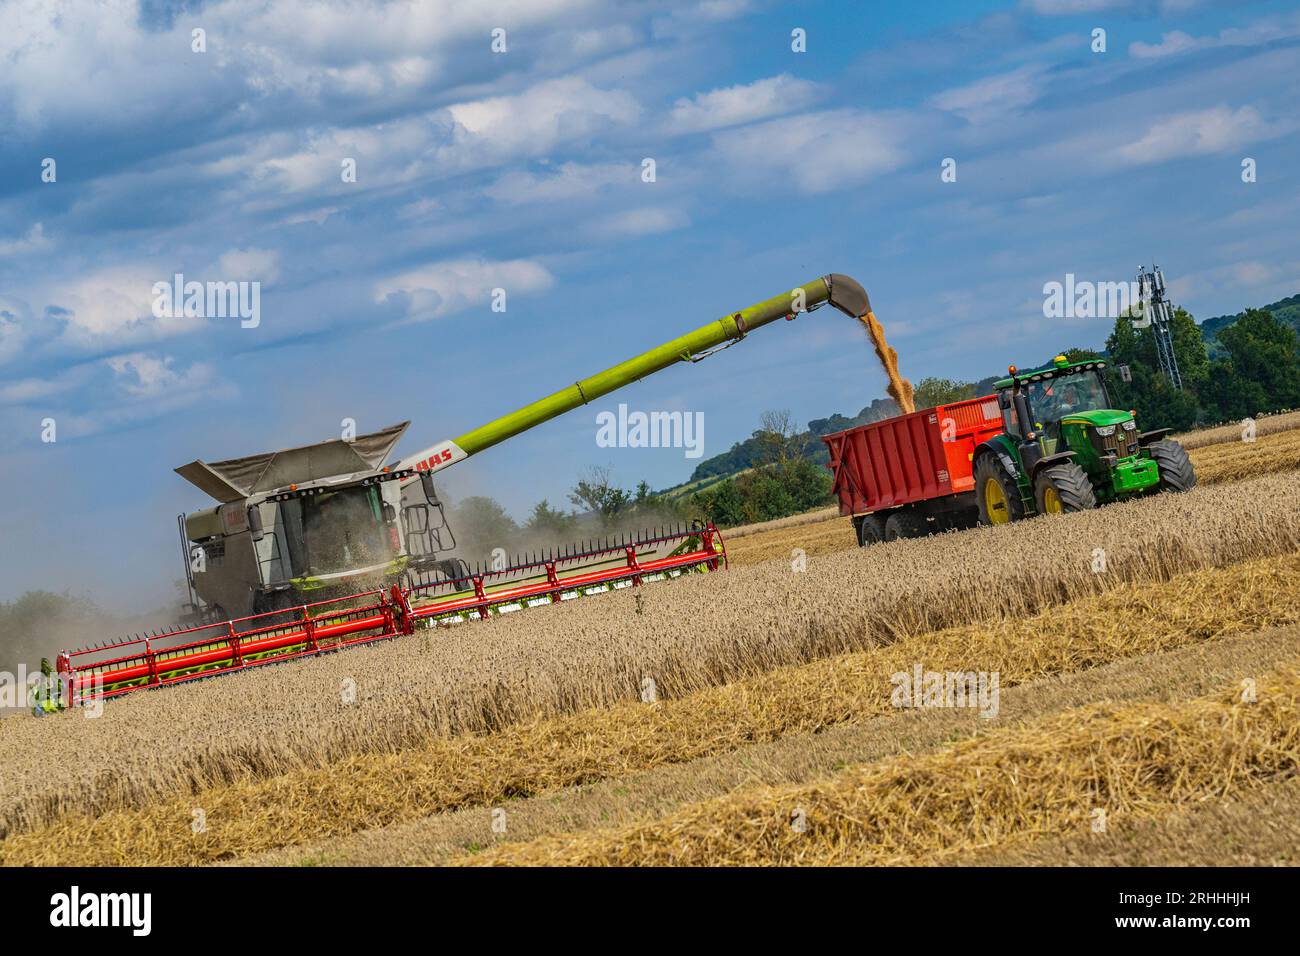 Lincolnshire, Regno Unito - Una mietitrebbiatrice che raccoglie il mais in un giorno d'estate durante il trasferimento al frumento su un trattore e un rimorchio in attesa per la consegna al magazzino di cereali Foto Stock